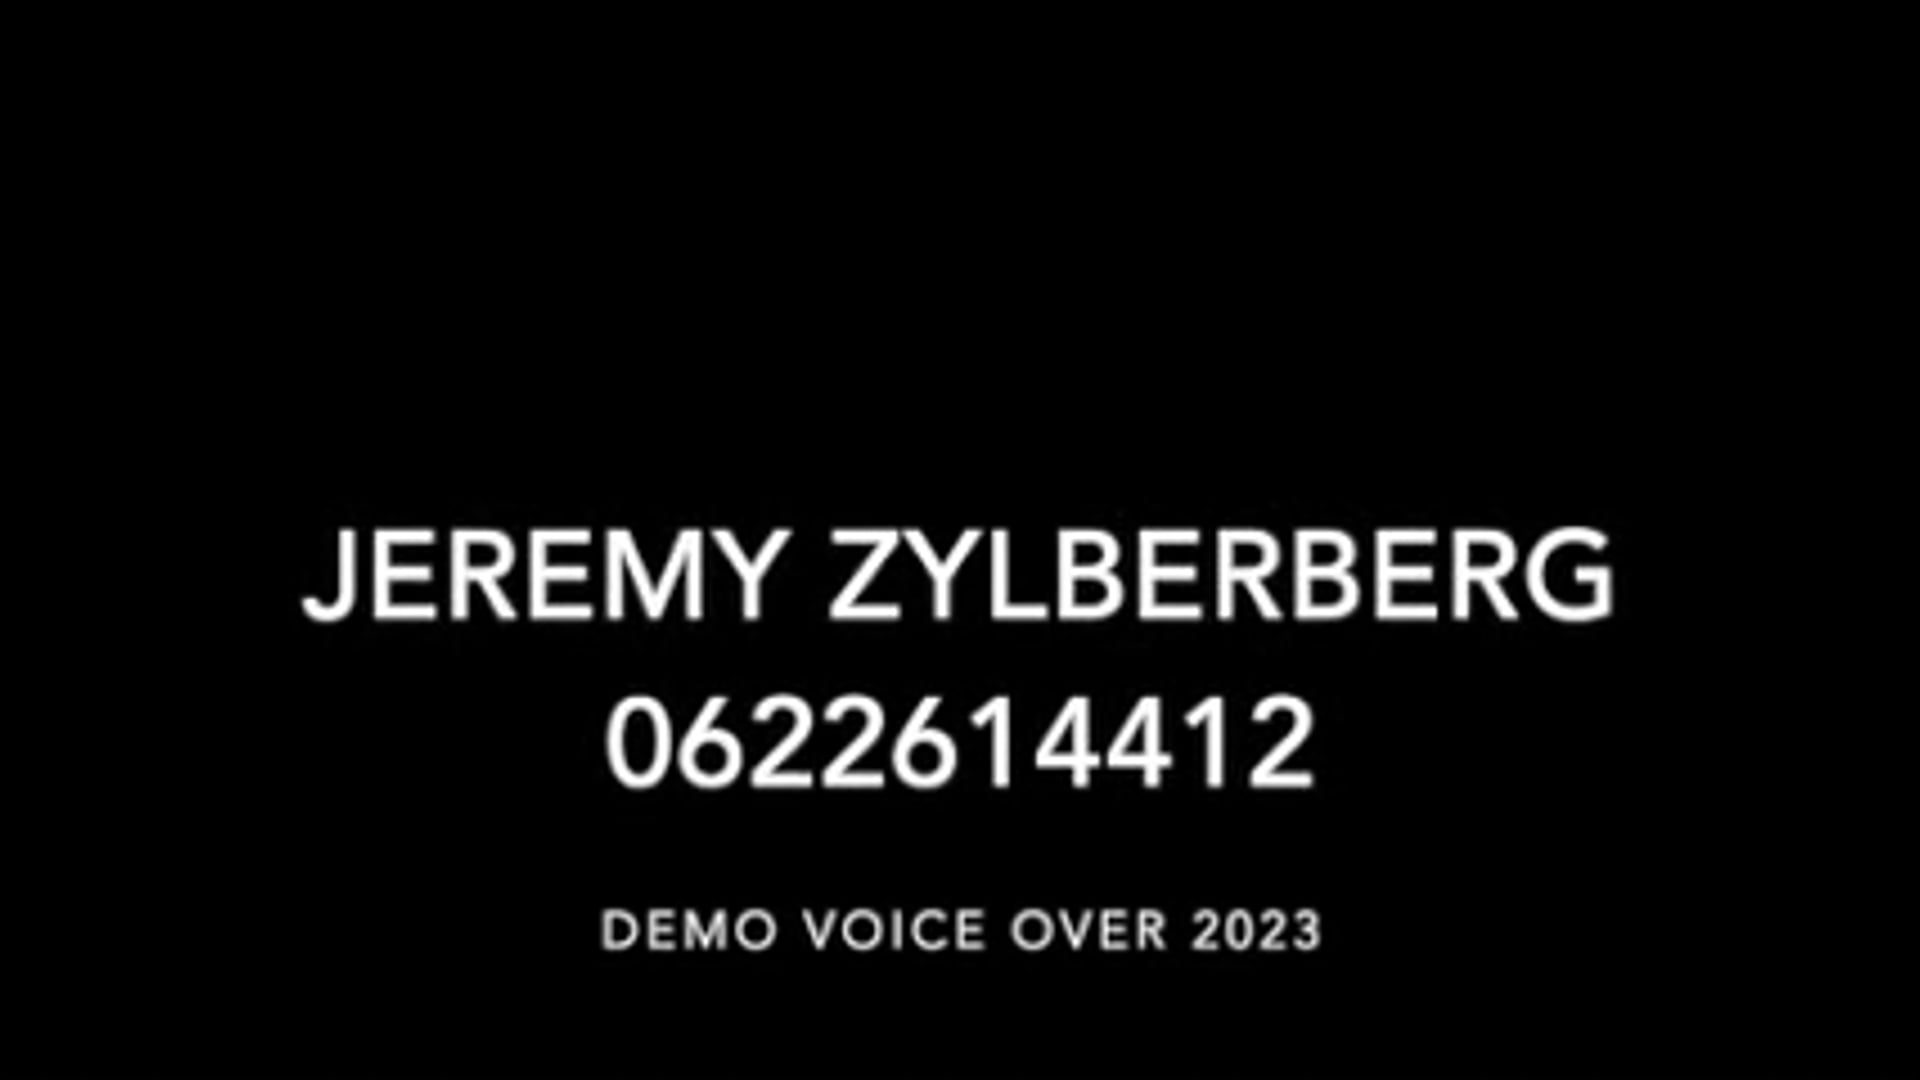 Vidéo DEMO VOICE 2023 JEREMY ZYLBERBERG 0622614412